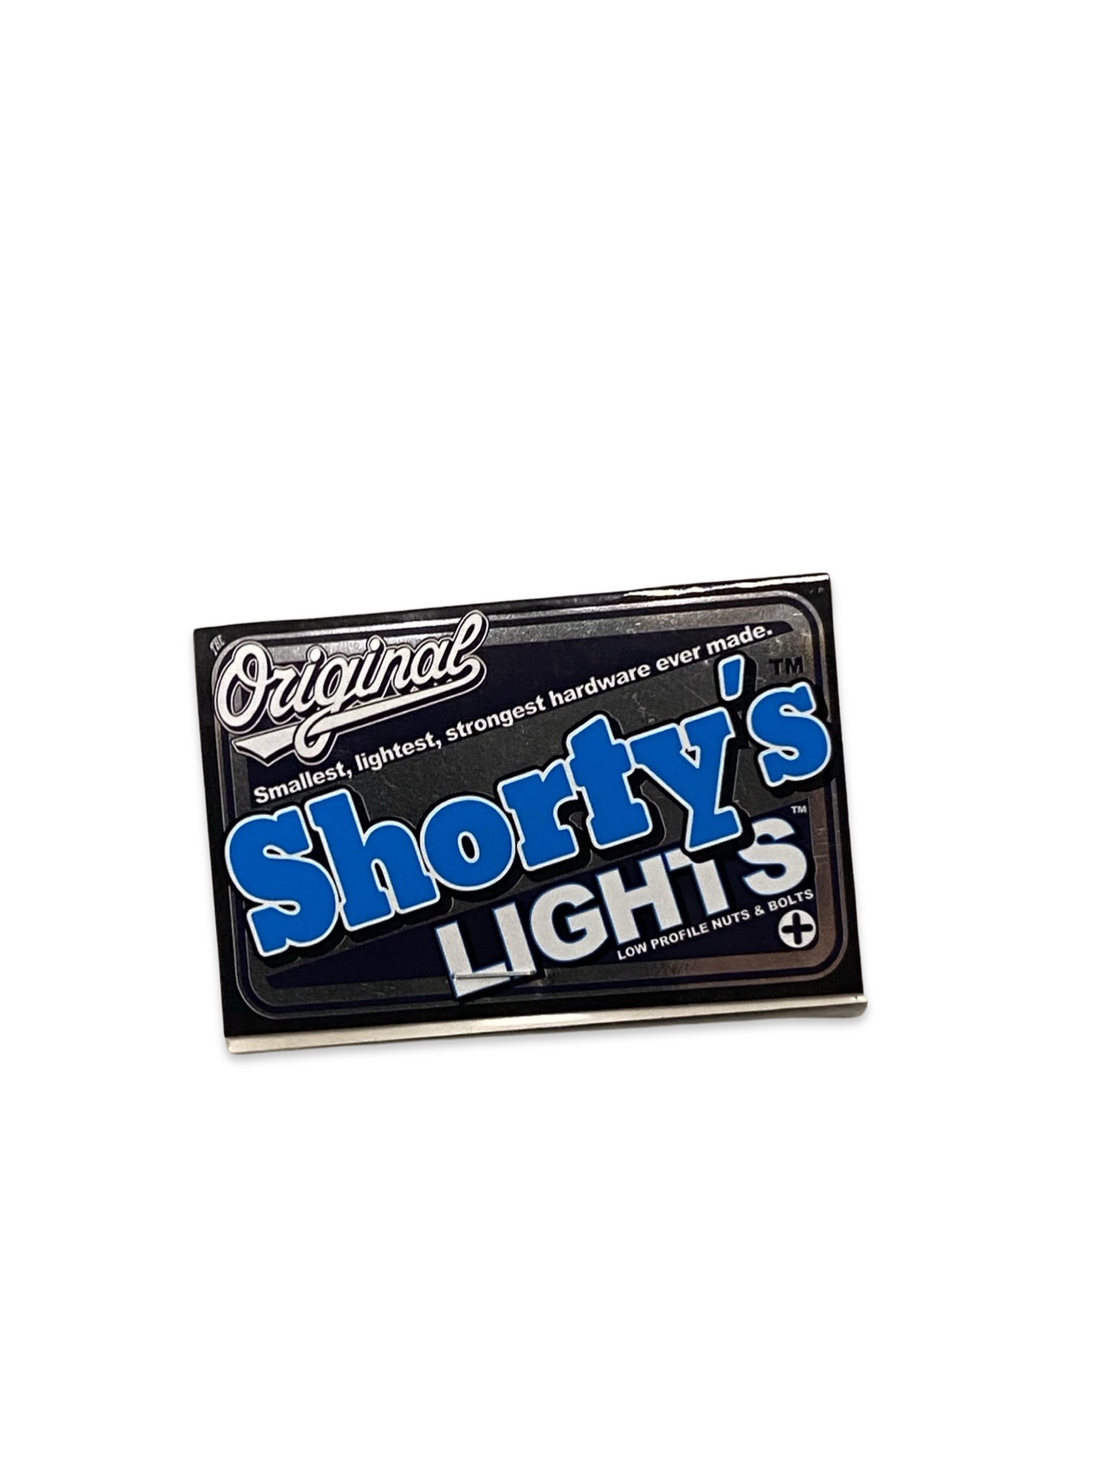 Shorty’s Lights Hardware Phillips 7/8”